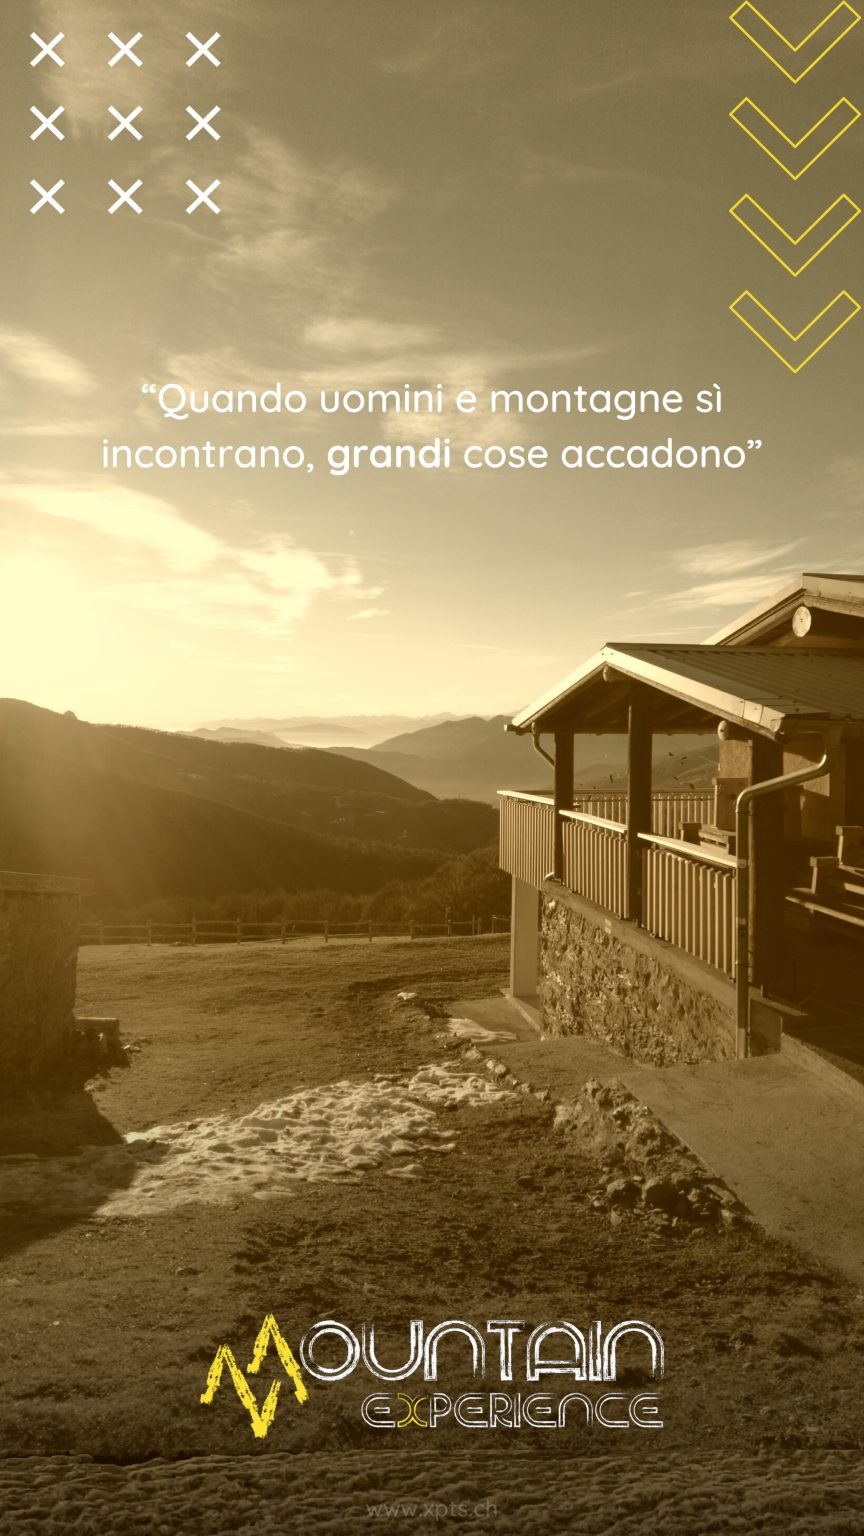 02-Monte-Gazzirola-7